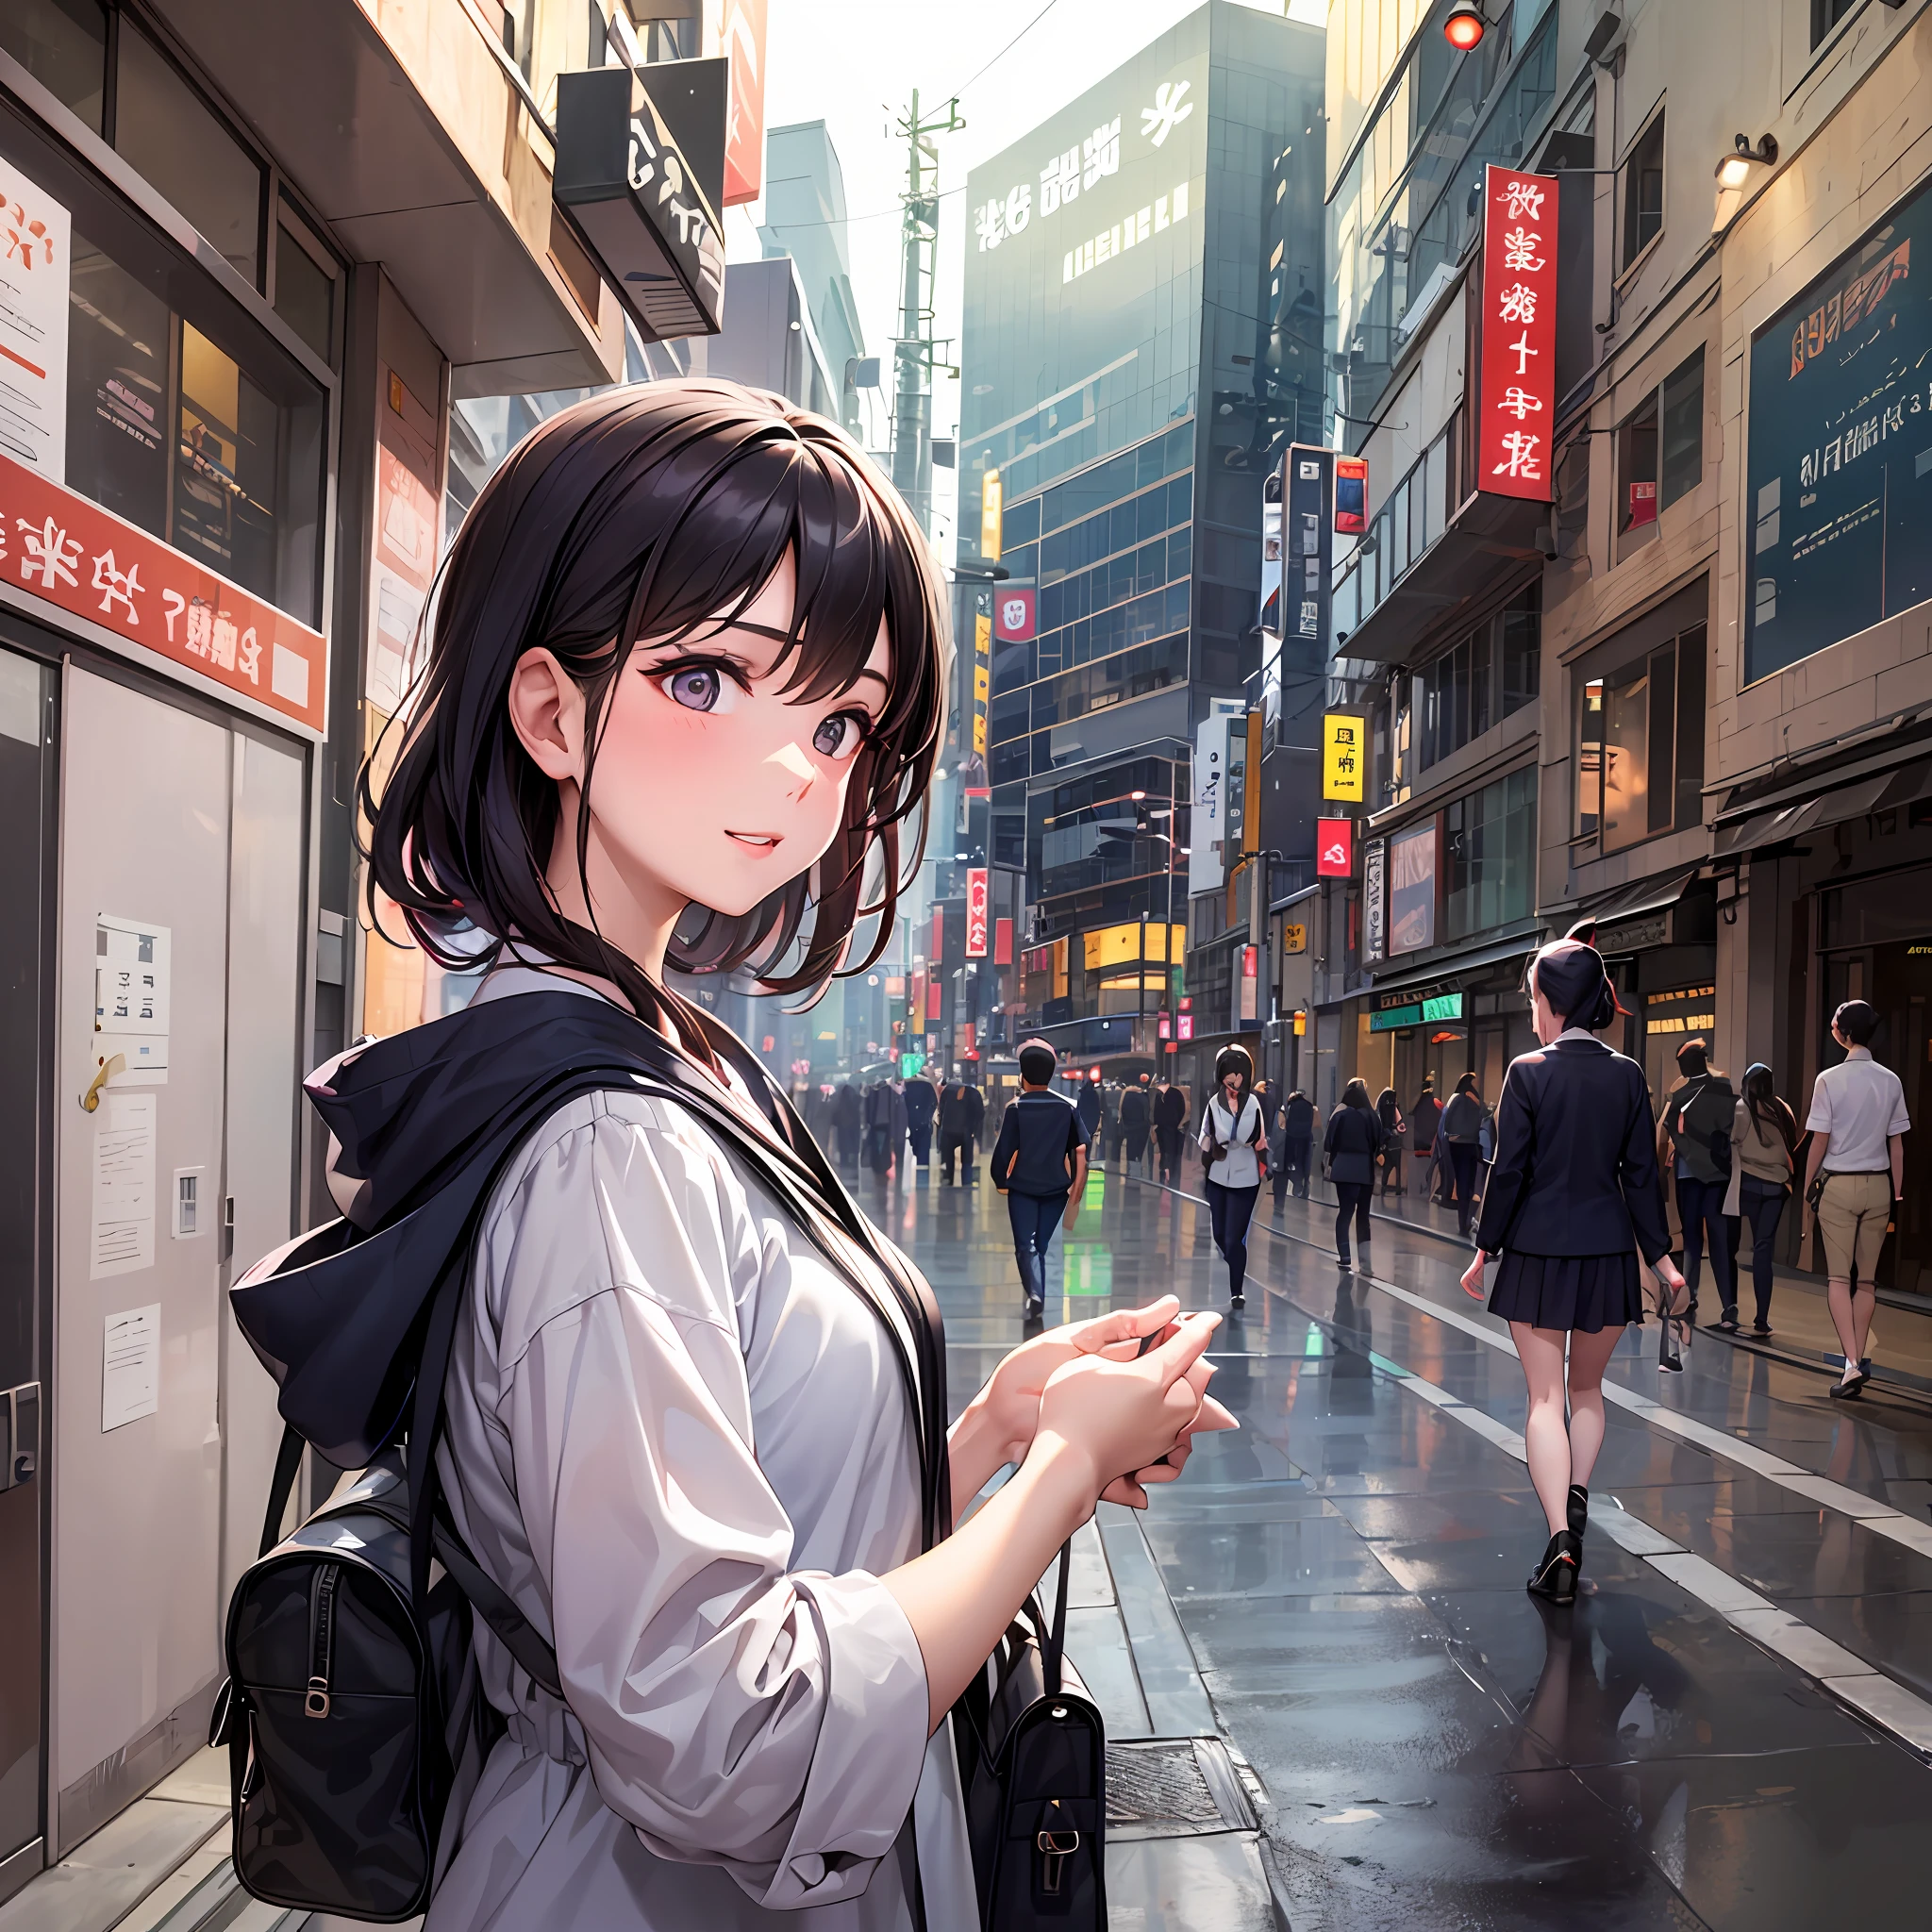 東京の中心部, 19歳の少女、アヤは大学生活の初日、人生を変える旅に出ました. 興奮と緊張の入り混じった胸が高鳴る, そして彼女の目は好奇心に満ちていました, 綾の魅力は、彼女の魂を満たした期待と決意を反映していました.

彼女がにぎやかな街の通りをナビゲートしたとき, 東京は魅惑的な機会の迷宮のように見えました. 活気あふれる街並み, 伝統と現代性の融合, エネルギーと目的意識で彼女を囲んだ.

大学キャンパスに到着, 見知らぬ顔ぶれの海に迎えられた綾. まだ, 誰もが同じ船に乗っていることに気づいたとき、暖かさが彼女を抱きしめました—彼らの学問の旅への新たなスタート.

講堂に足を踏み入れる, 綾は興奮のラッシュを感じた. 新しい本と知識の香りで満たされた広大な部屋は、彼女を待っているすべての経験に浸るように手招きしました. 彼女が取った各ステップは、彼女がなりたいと思っていた人に近づきました.

教授の言葉は知恵の交響曲のようでした, 新しいレンズを通して世界を見るように綾を鼓舞する. 知識の追求は彼女の中に火花を散らしました, 彼女はすべての言葉を熱心に吸収しました, 彼女の好奇心は刻一刻と高まっています.

休憩中, 綾は気づいたが、気づいたのは人懐っこい顔に囲まれていた. 会話は穏やかな流れのように流れました, 彼女は情熱と夢を共有したクラスメートと絆を深めました. 仲間意識は彼女の最初の緊張を和らげました, サポートと帰属意識の雰囲気を醸成する.

授業外, 広大なキャンパスを探索した綾, 街の活気の中で彼女が慰めを見つけることができる隠れたスポットと静かな庭園を発見する. キャンパスは彼女の聖域になりました, 彼女が反省できる場所, 充電, そして彼女の夢を抱きしめる.

夕方には, 彼女が寮に戻ったとき, 彼女はさまざまなバックグラウンドを持つルームメイトとつながりました, 彼らの文化について学び、彼らの故郷の物語を共有する.